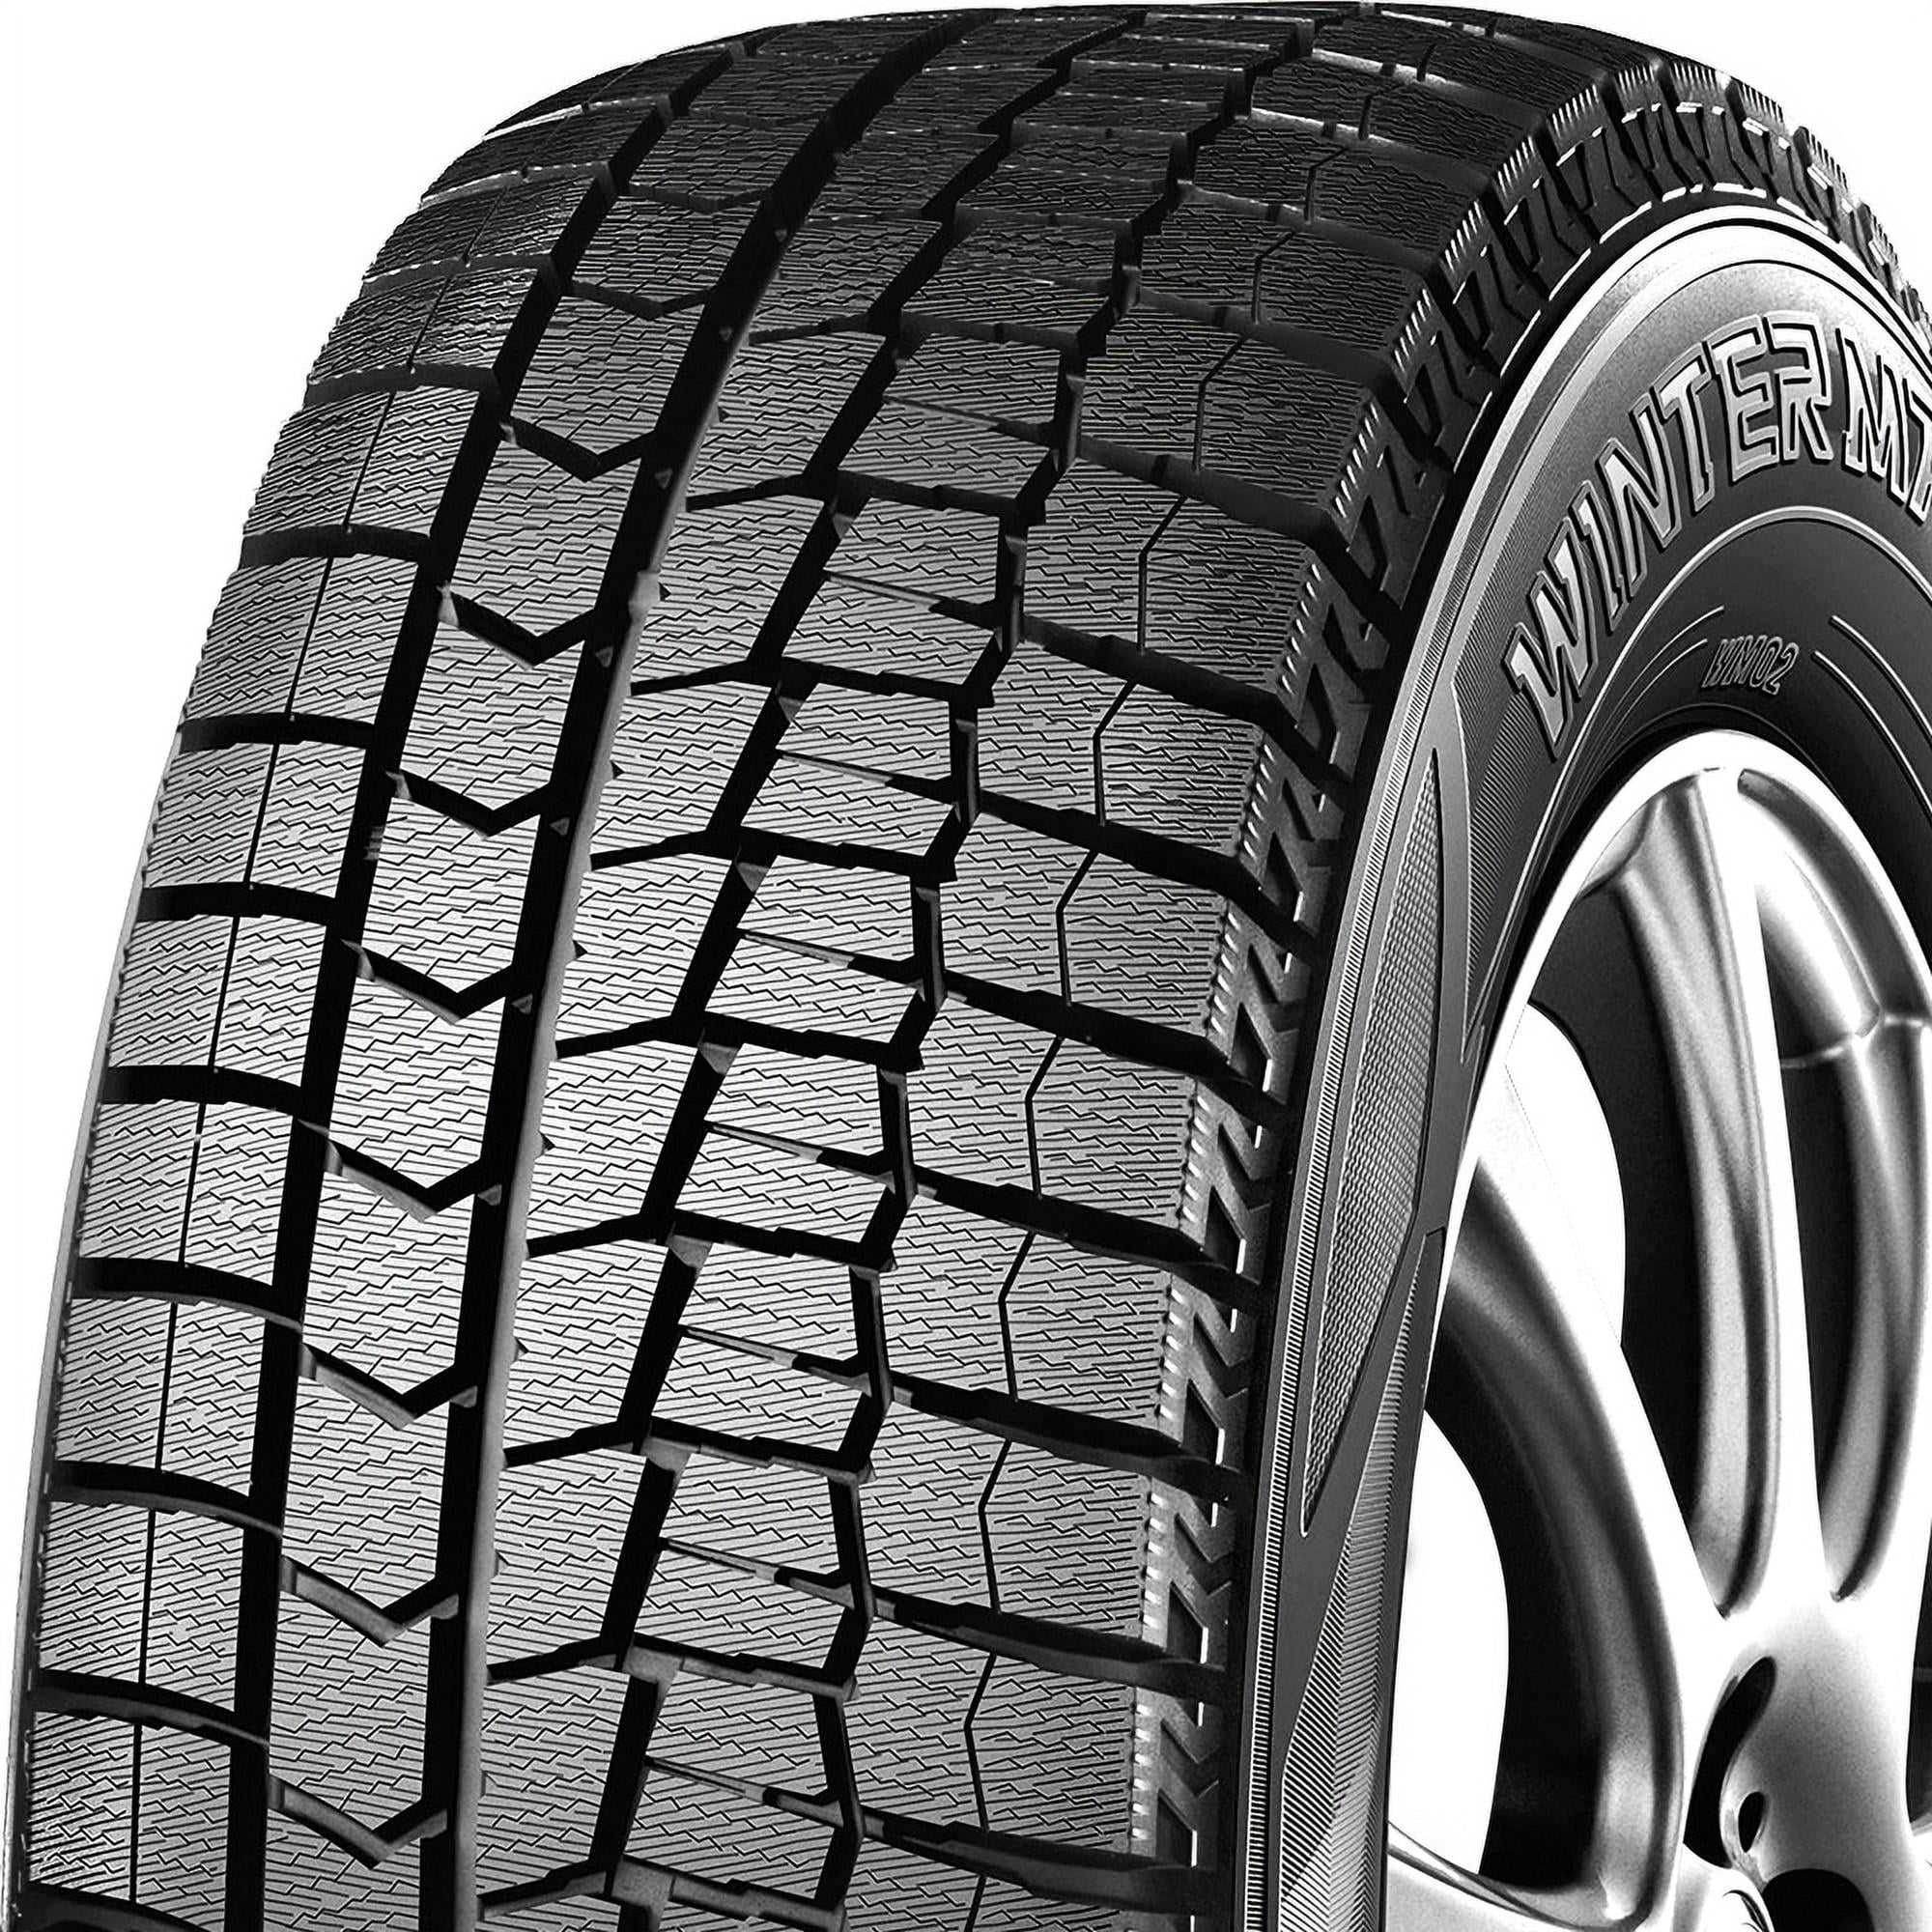 Dunlop winter maxx 2 2013 2014-16 winter tire bsw Dodge 92T Fits: Dart Dart R/T GT, P225/40R18 Dodge